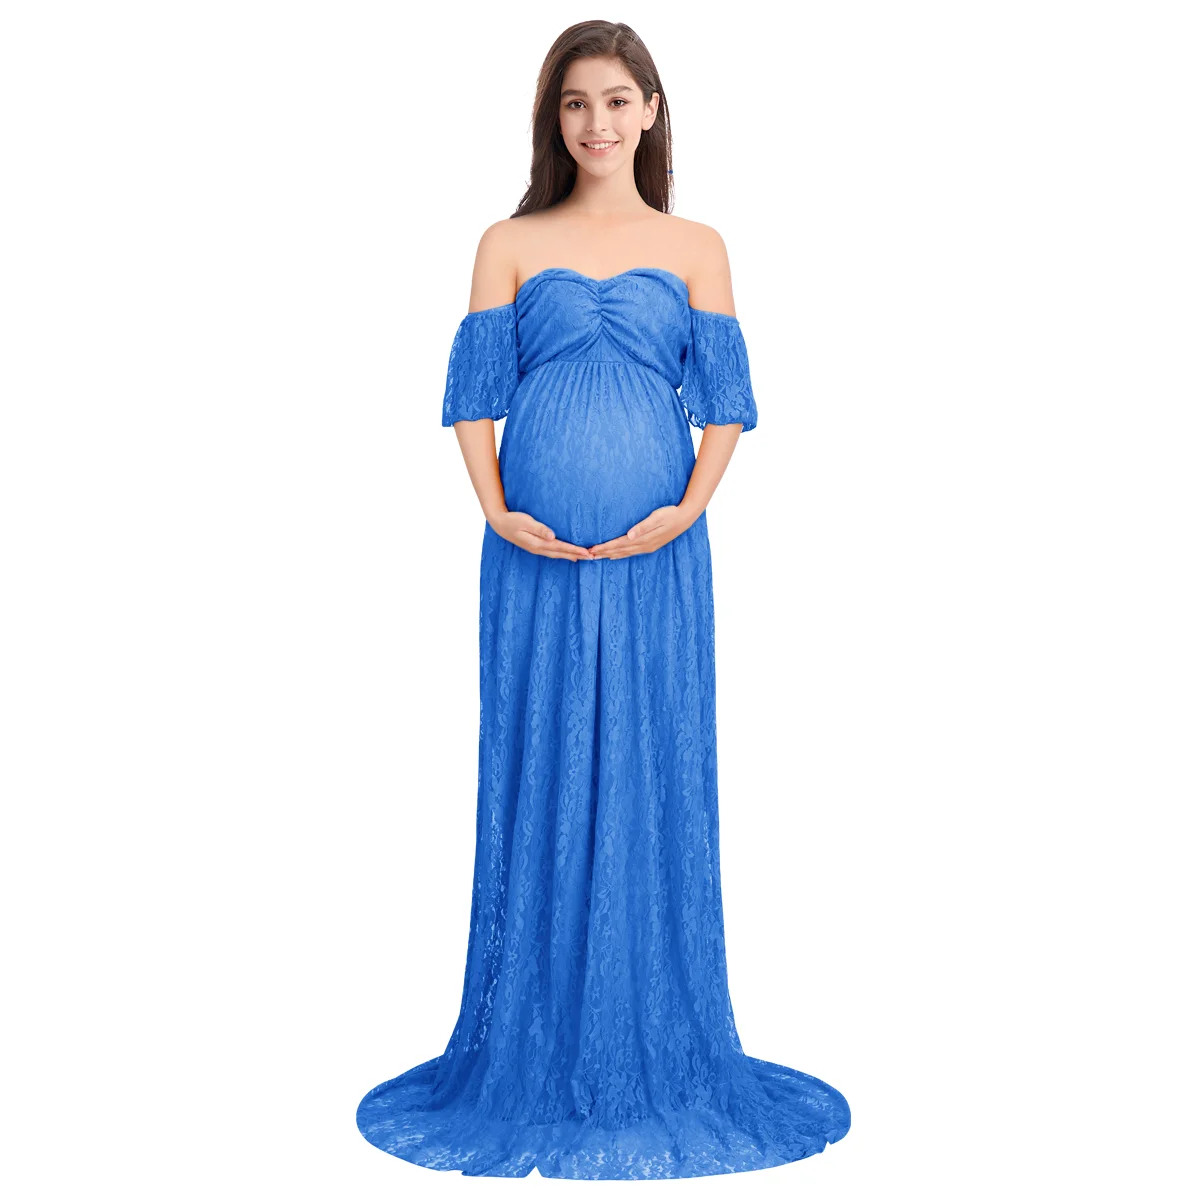 Платье для беременных длинное платье с длинным шлейфом для фотография беременной женщины свадебное платье для беременных Платья для фотосессии - Цвет: Royal Blue